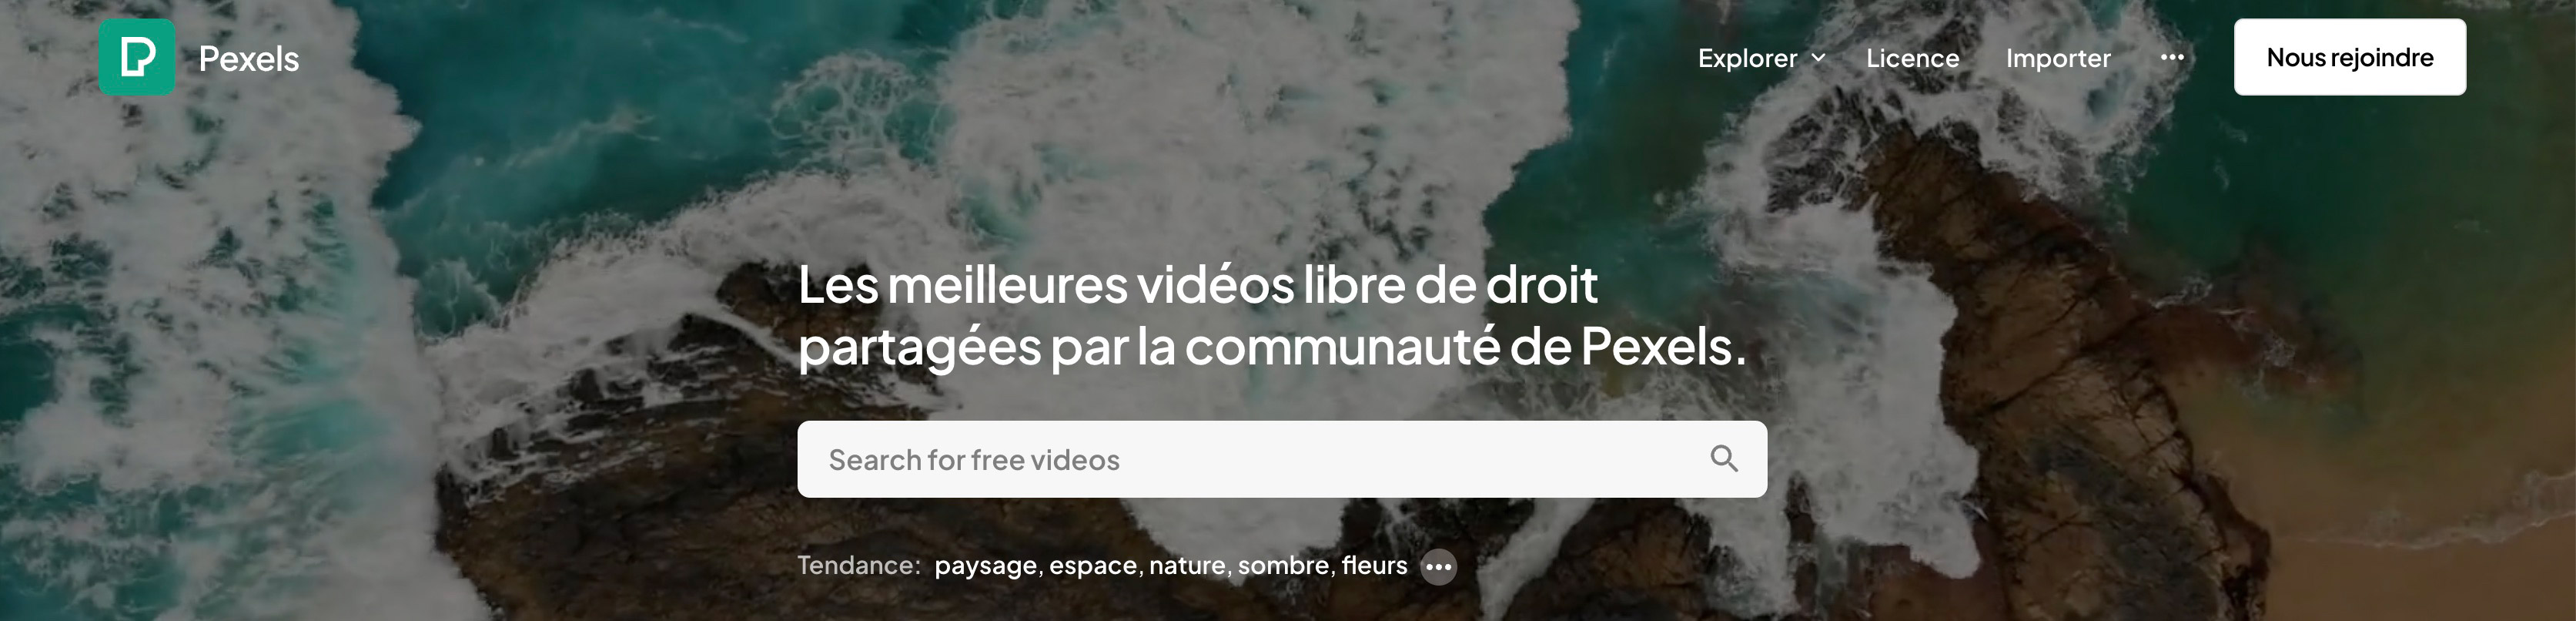 Vidéos libres de droits Pexels